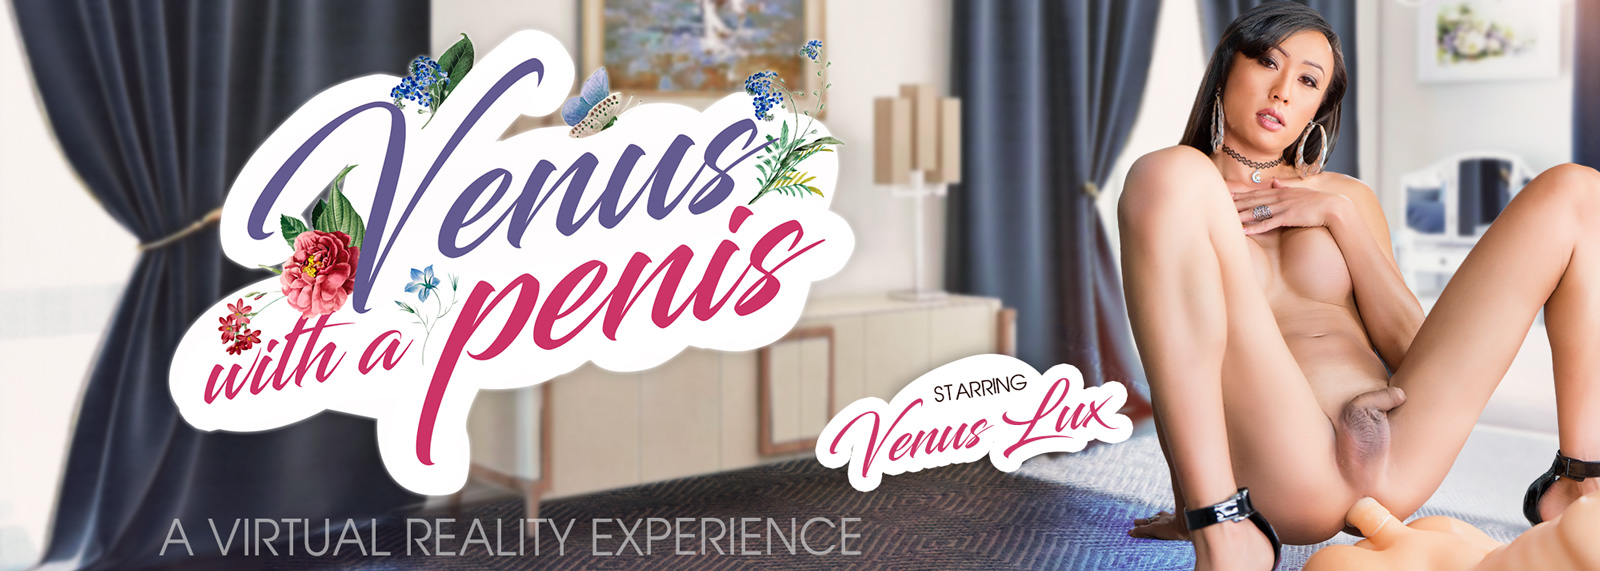 Venus with a Penis - VR Porn Video, Starring: Venus Lux VR